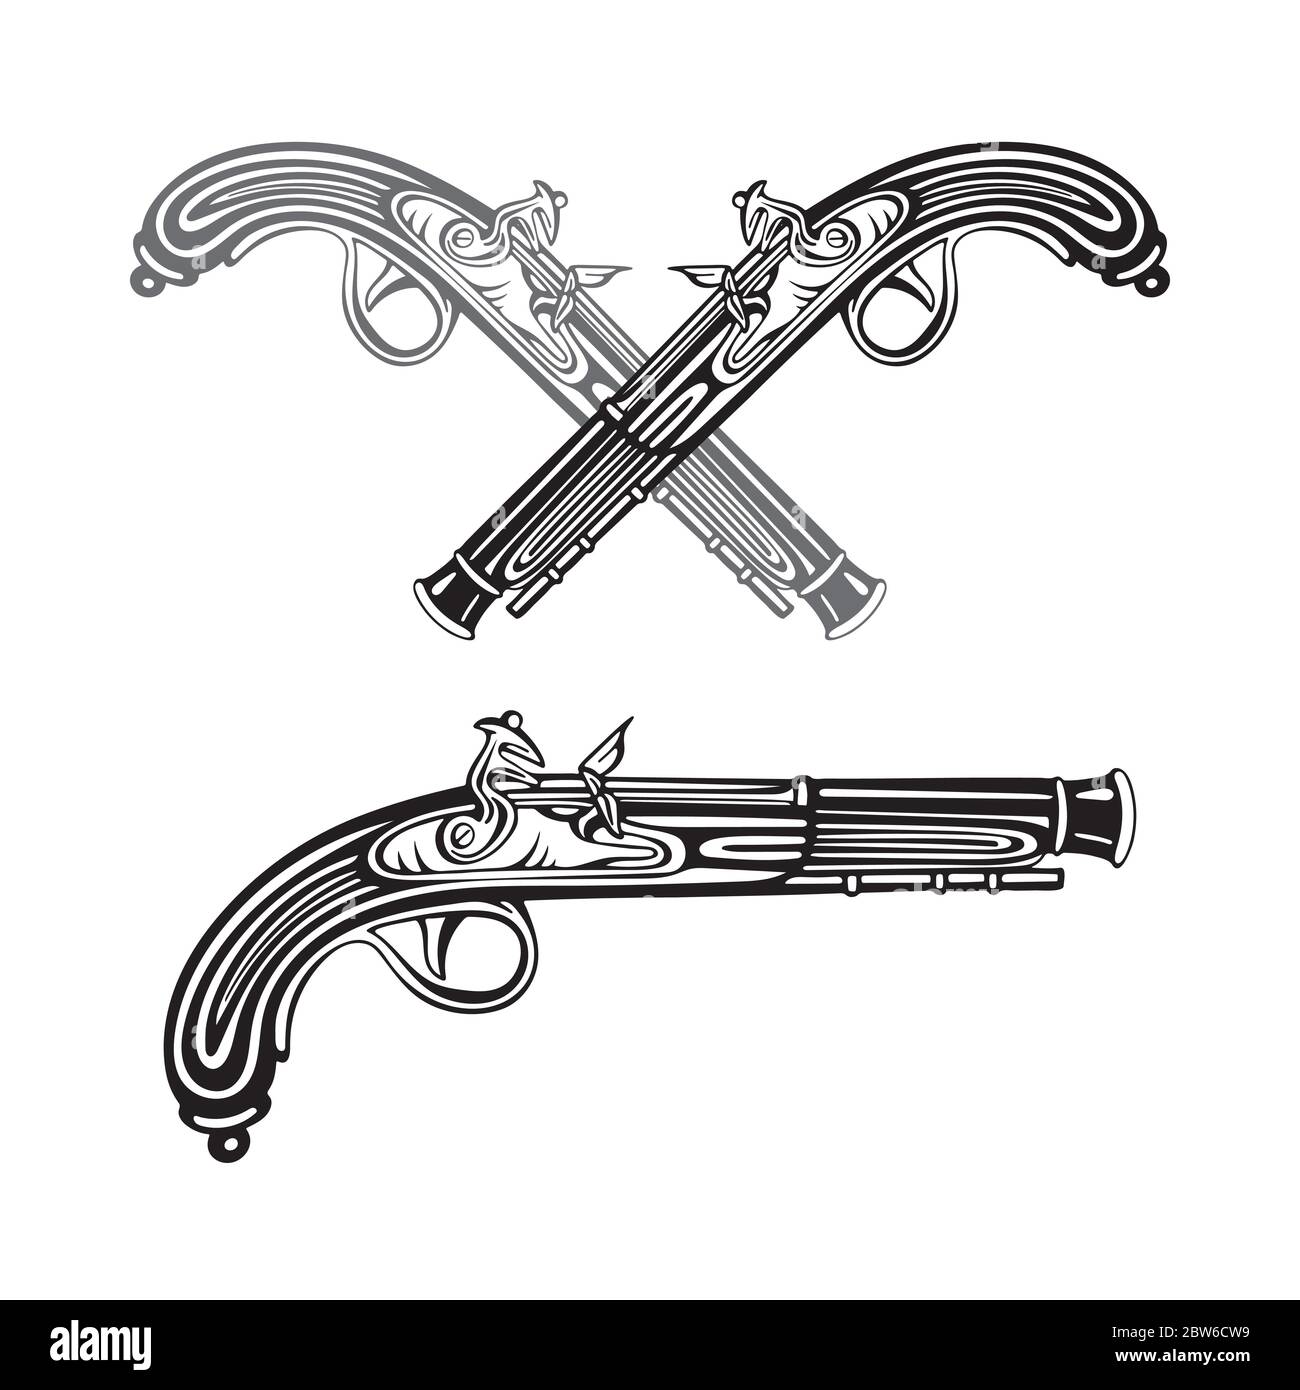 Alte Waffe. Vintage Flintlock Pistole Hand gezeichnete Vektor Illustrationen Sammlung. Gravur Stil antike Pistole Zeichnung. Teil des Sets. Stock Vektor